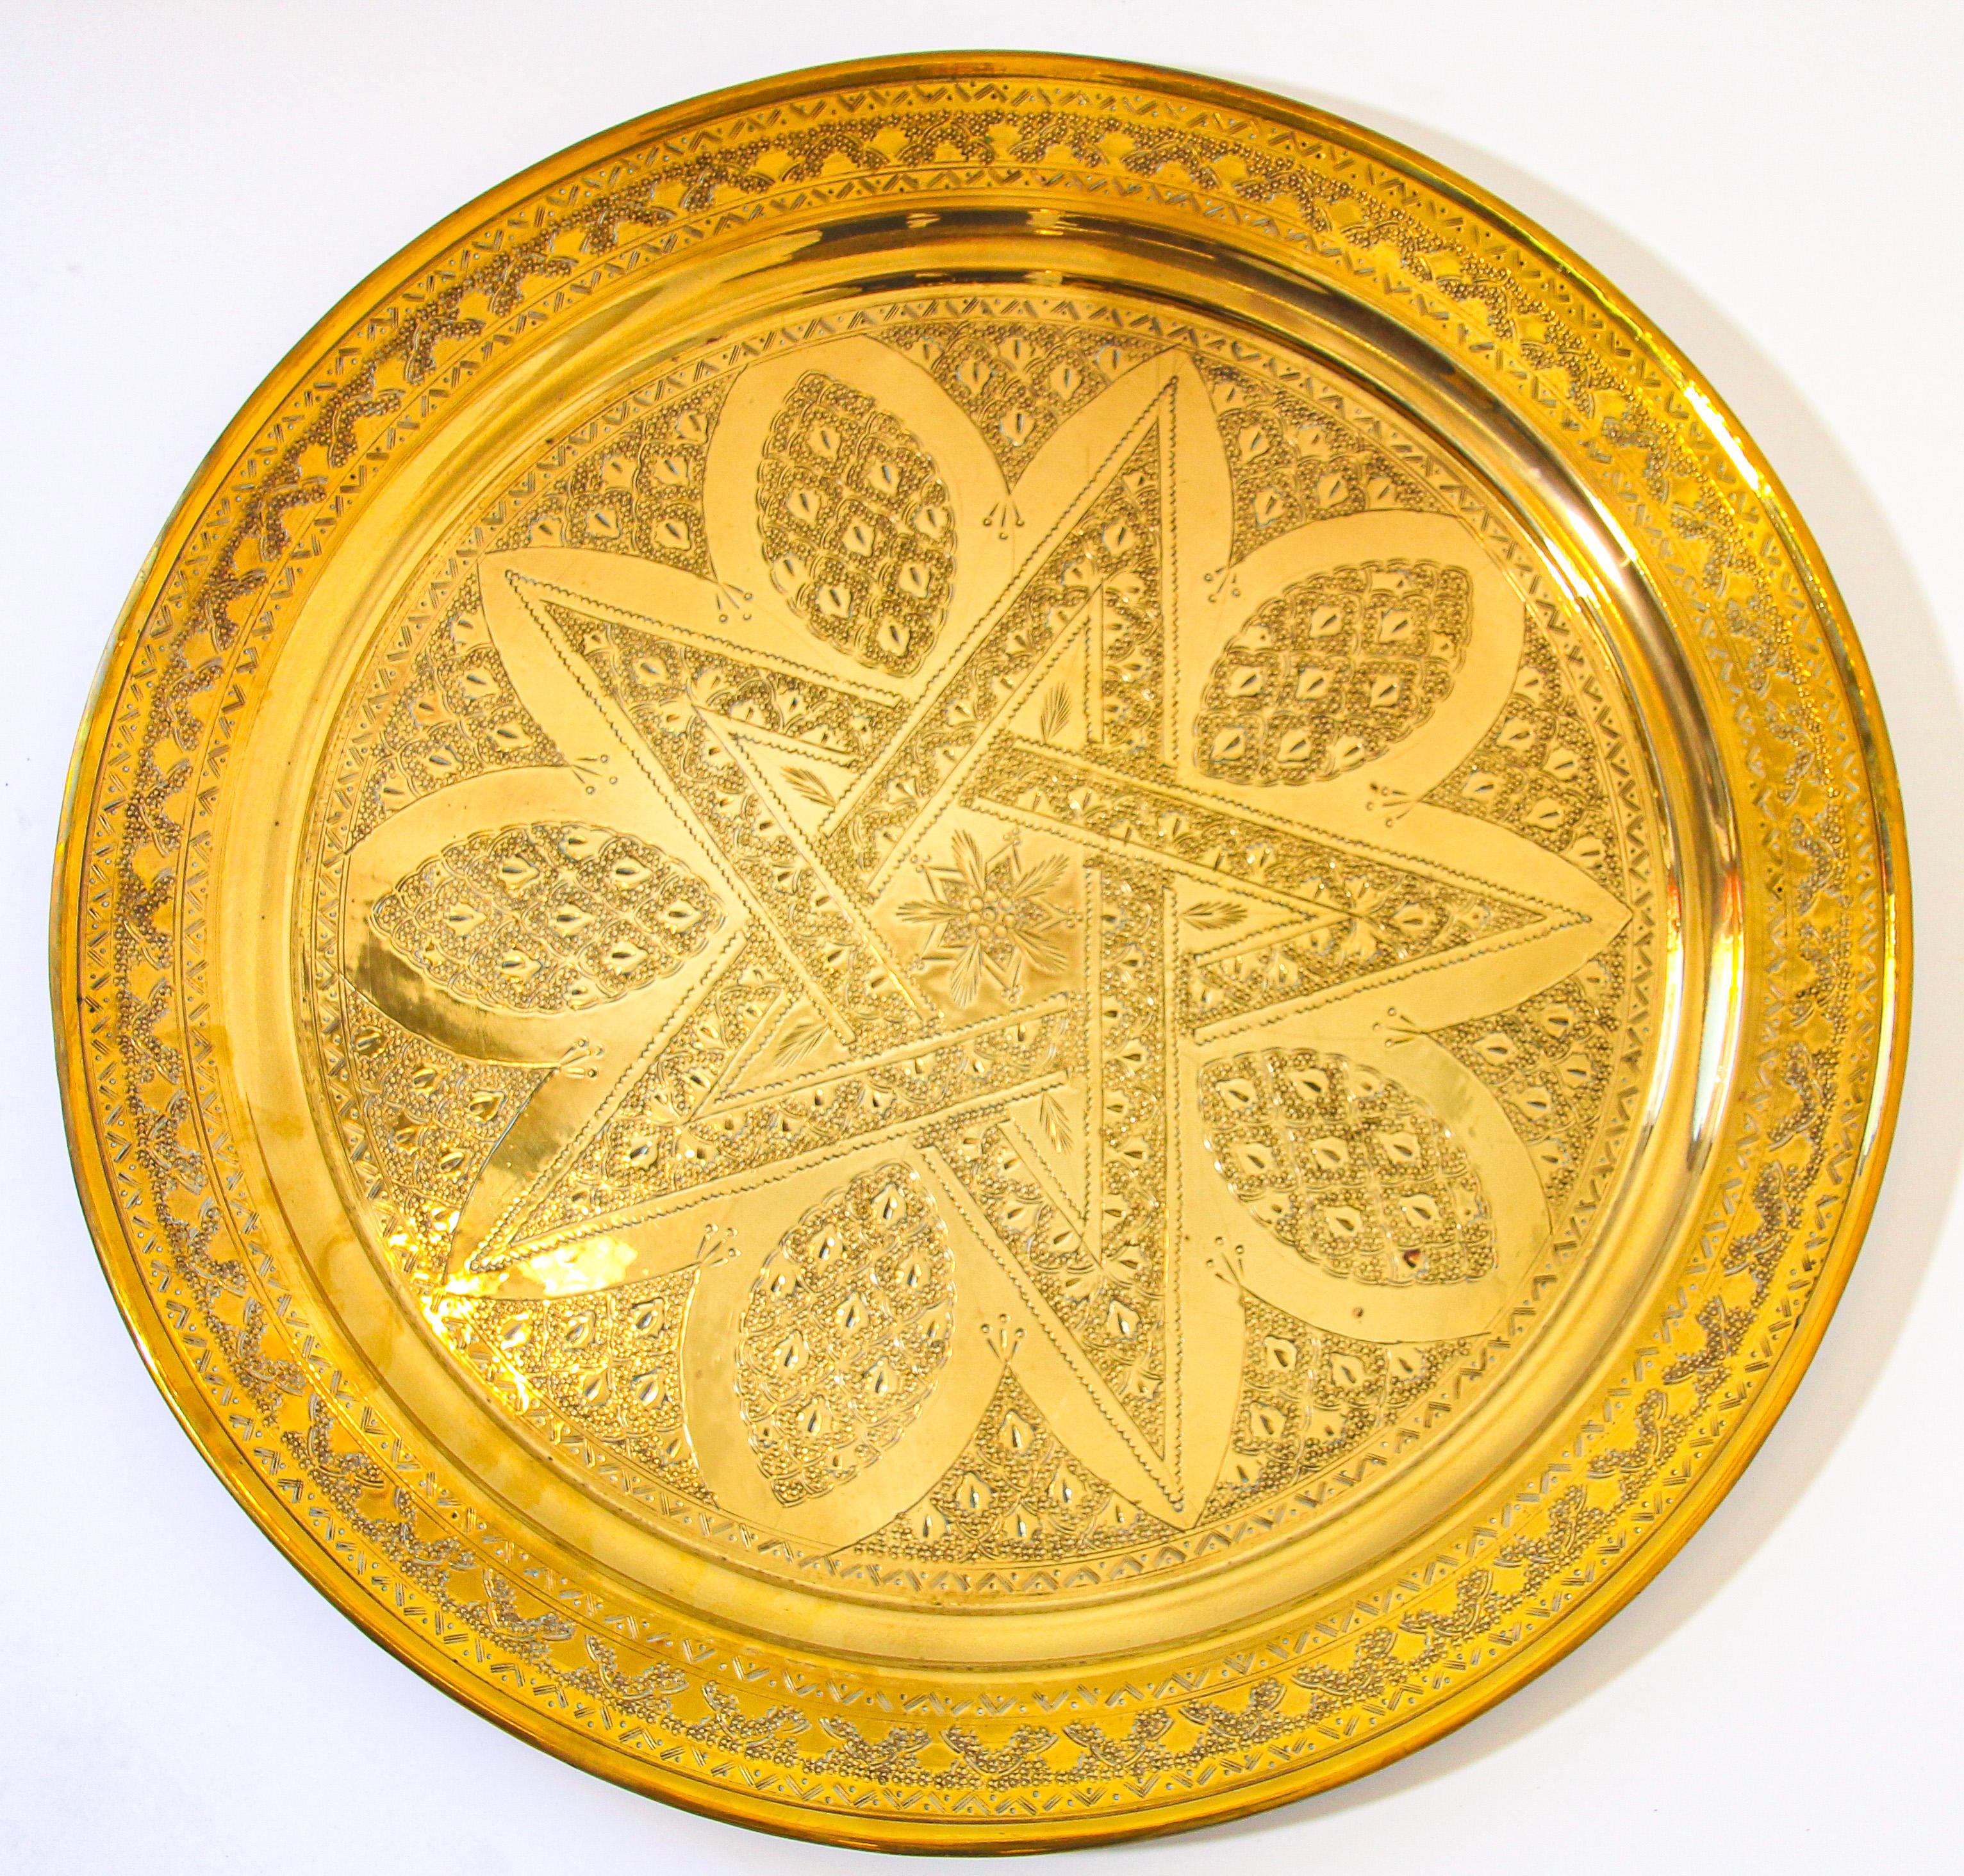 Antique 1900 Maroc plateau en laiton martelé à la main, œuvre d'art complexe, très fine islamique travail du métal laiton dessins gravés à la main avec une étoile à cinq pointes dans le centre.
Plateau décoratif en laiton poli fabriqué à la